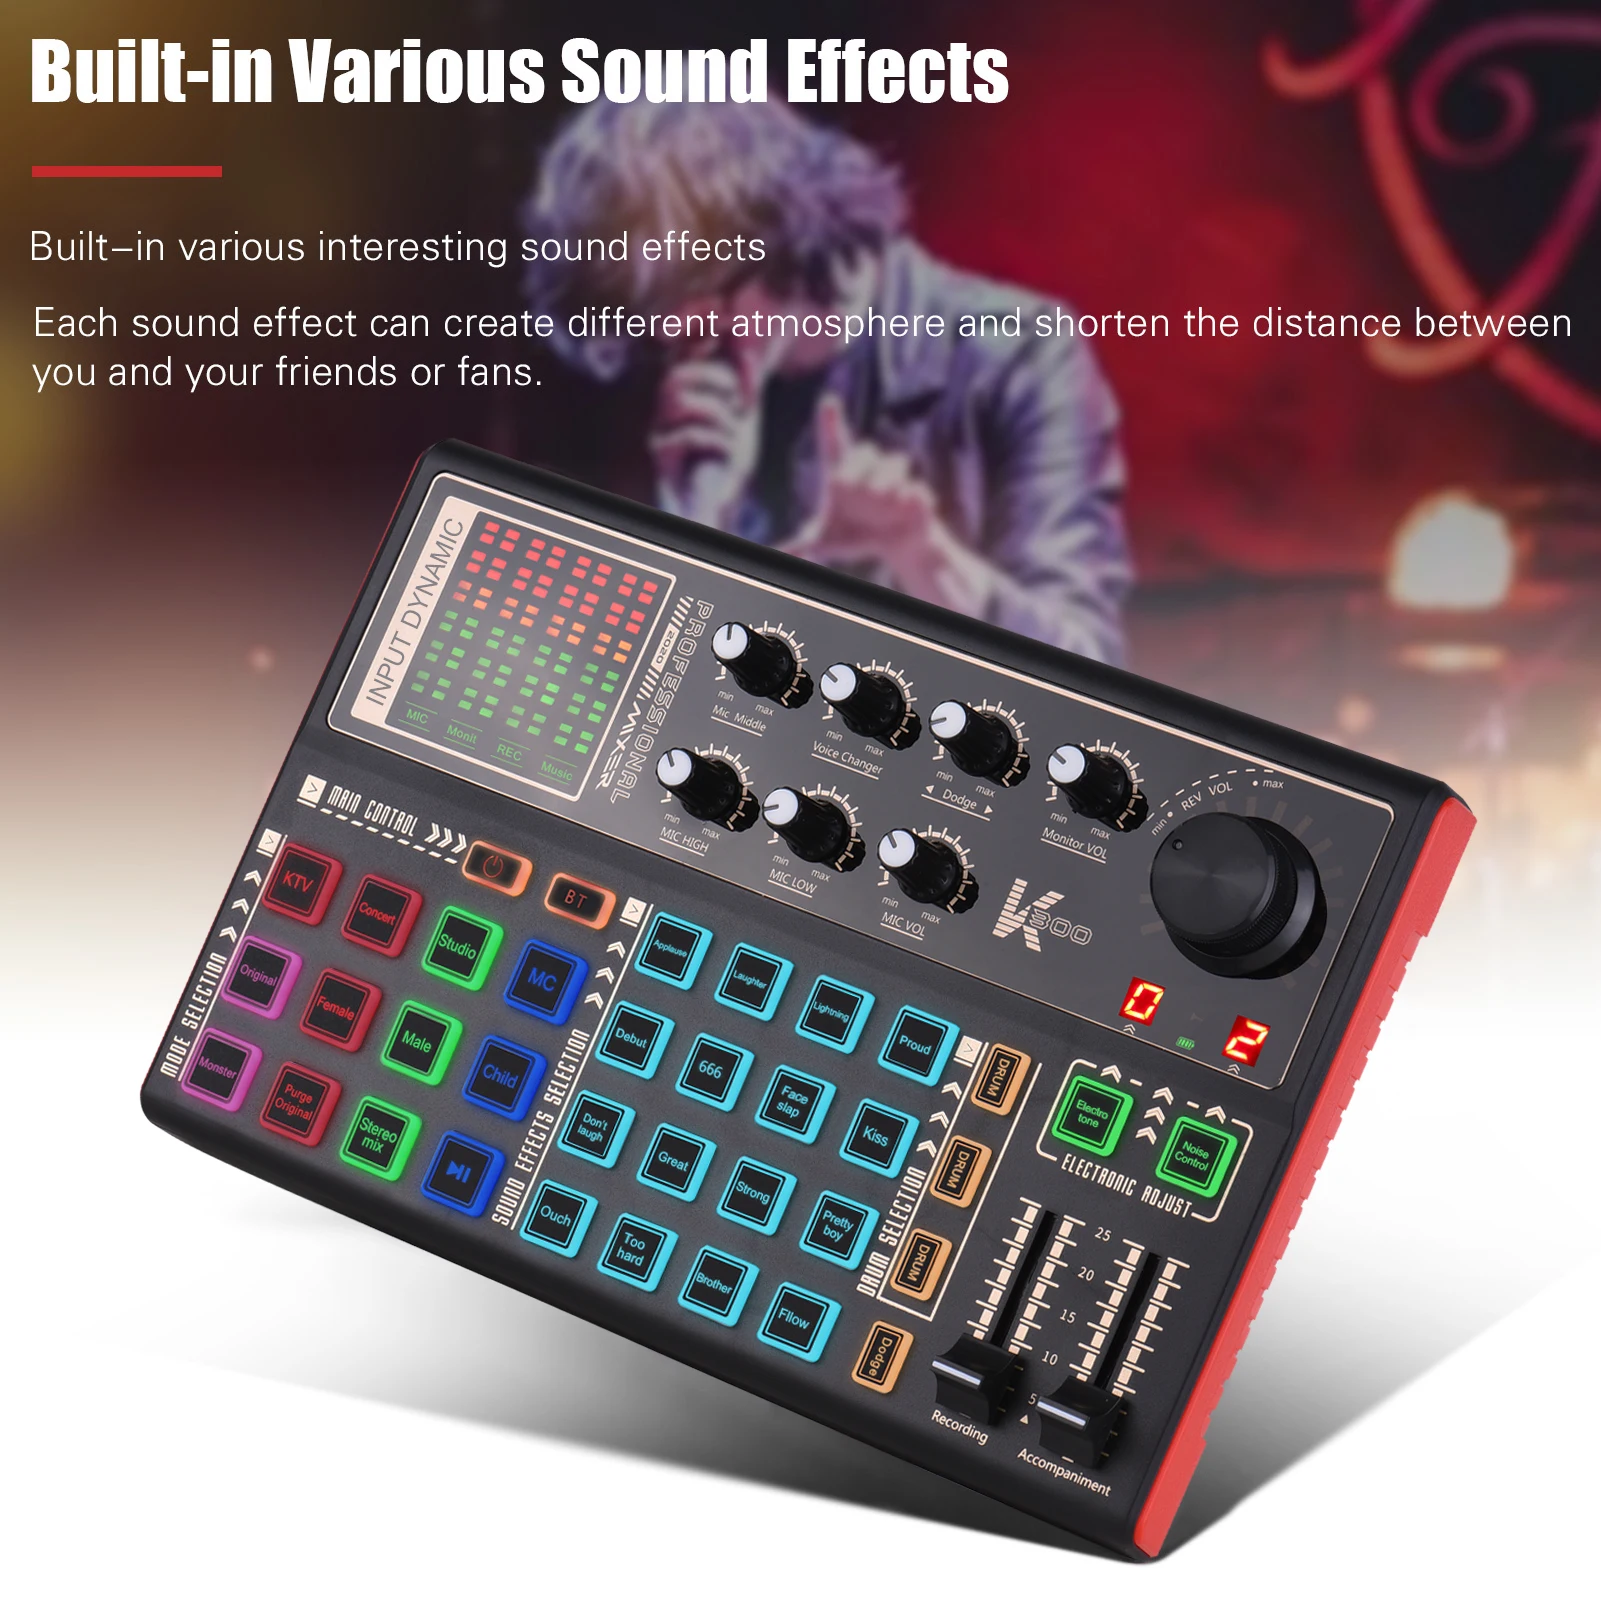 

Звуковая карта Muslady SK300, внешний преобразователь голоса, аудиомикшер, встроенный аккумулятор, несколько звуковых эффектов для записи музыки